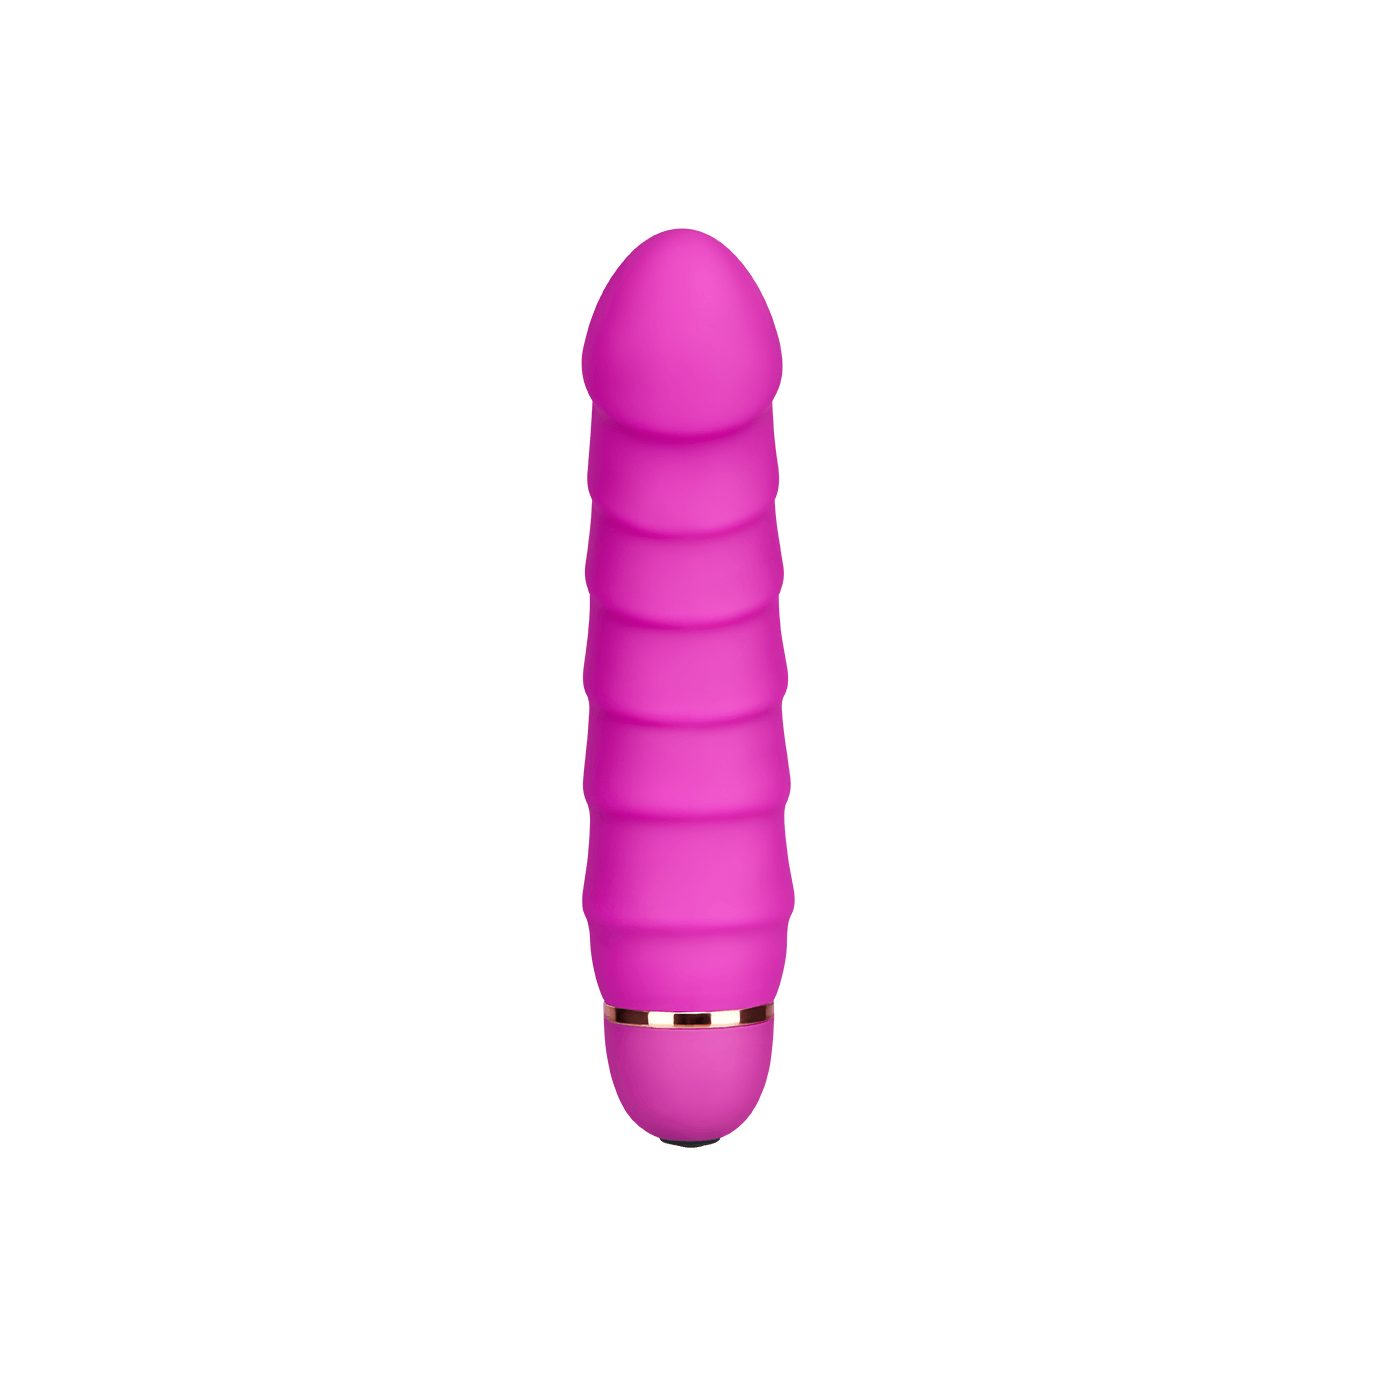 EIS Silikon (17cm) Klitoris-Stimulator EIS aus G-Punkt-Vibrator